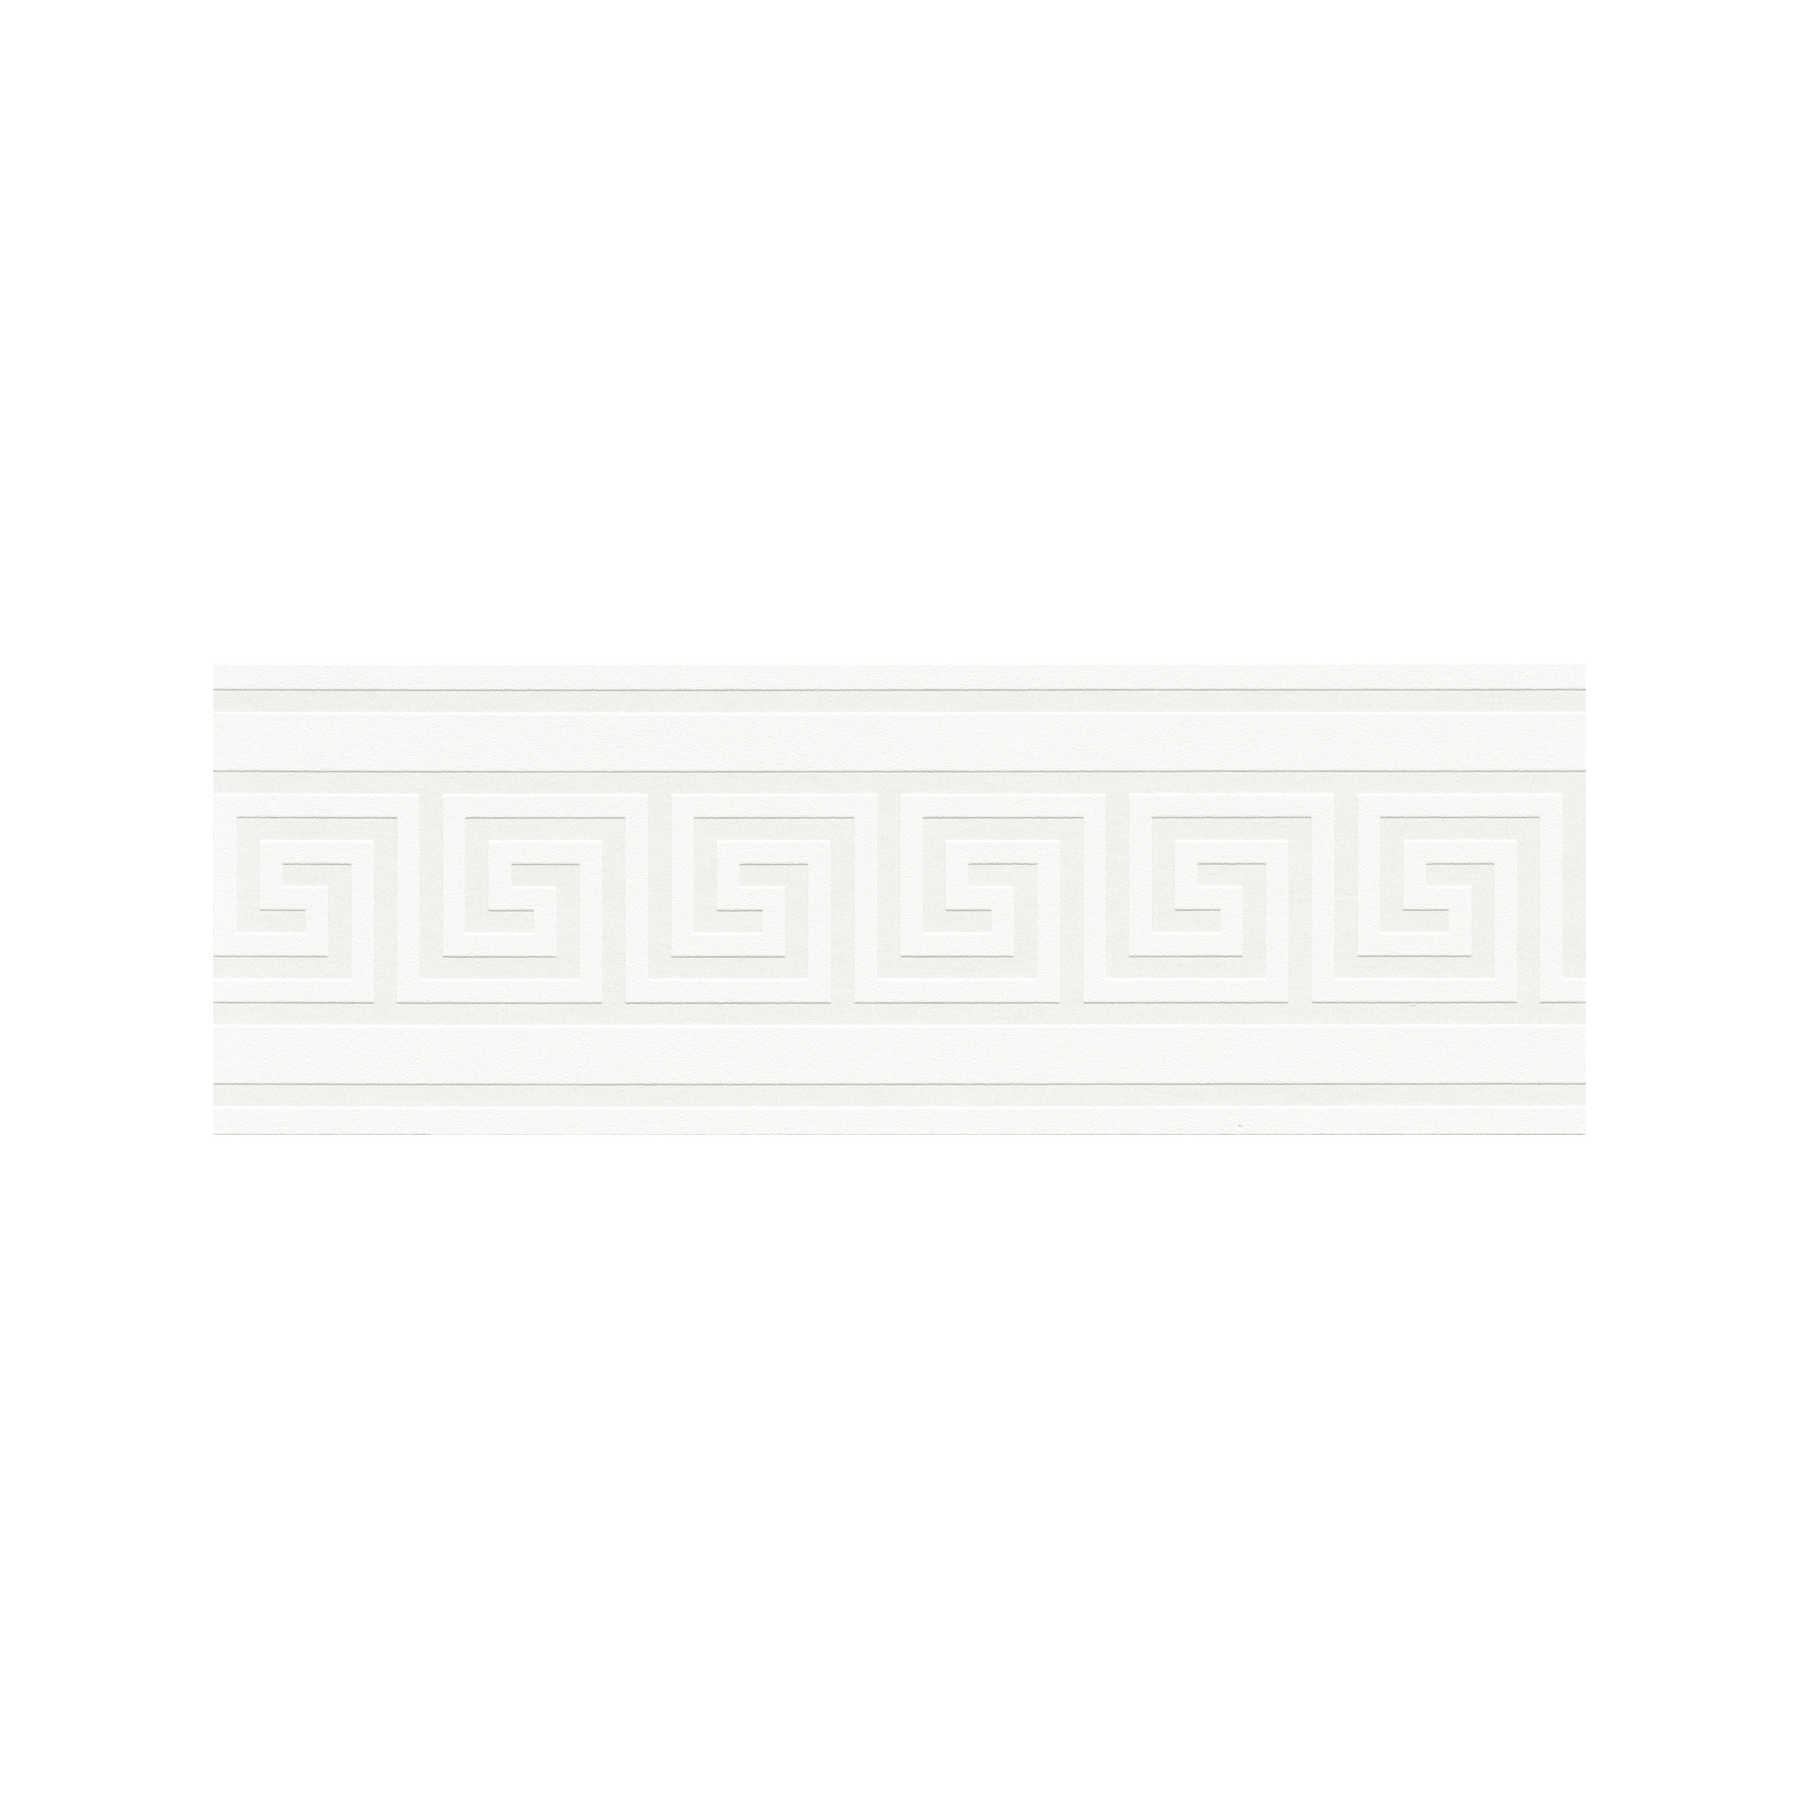         Wallpaper border with Greek key motif - white
    